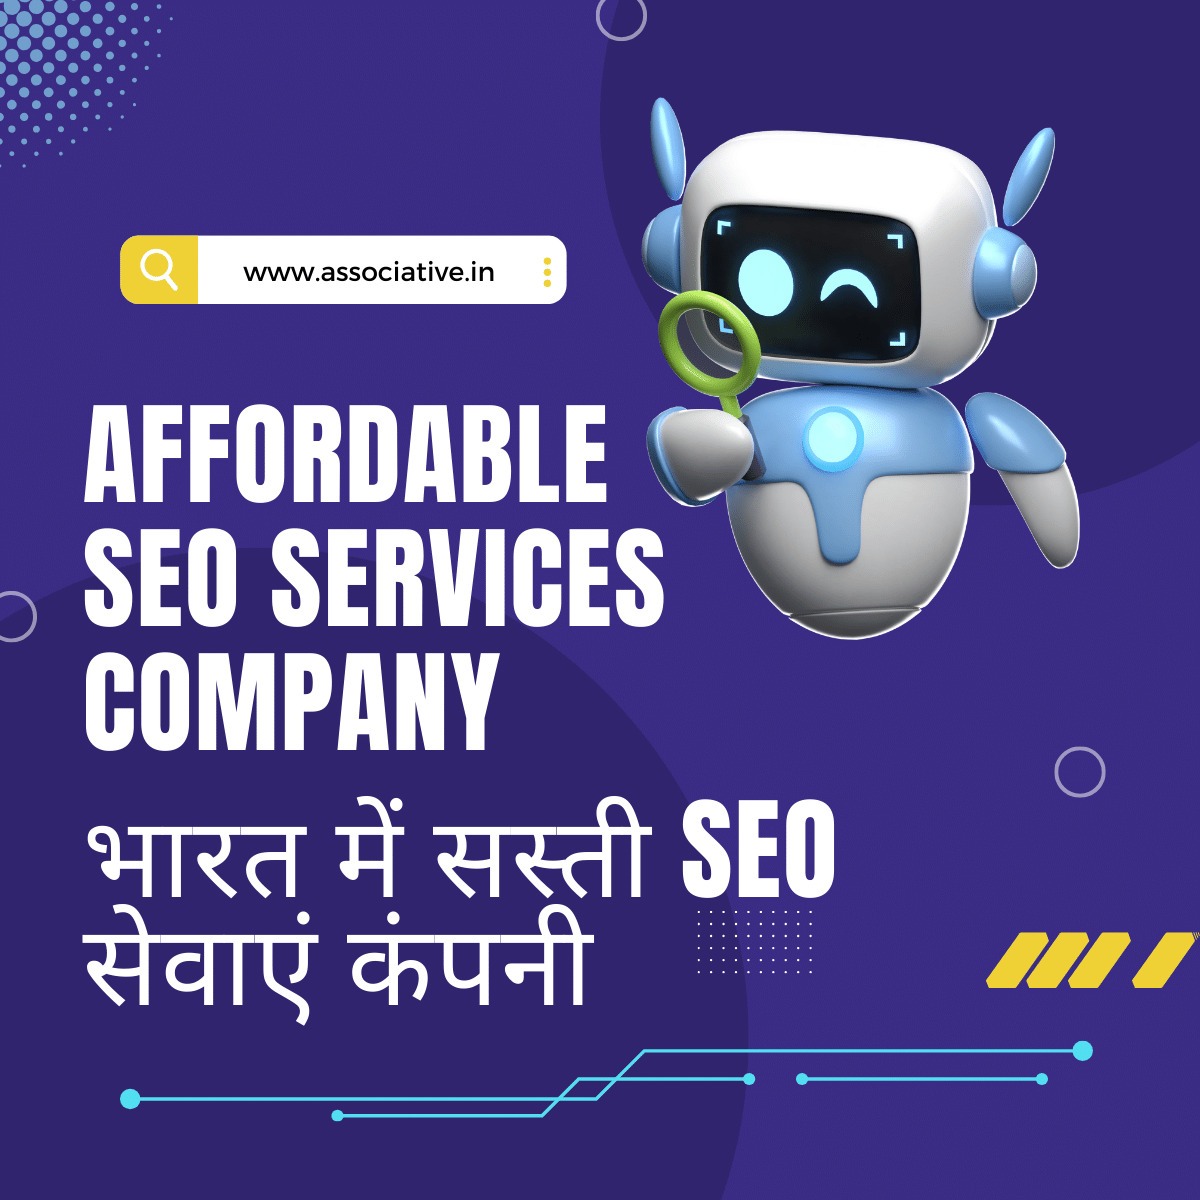 Affordable SEO Services Company भारत में सस्ती SEO सेवाएं कंपनी